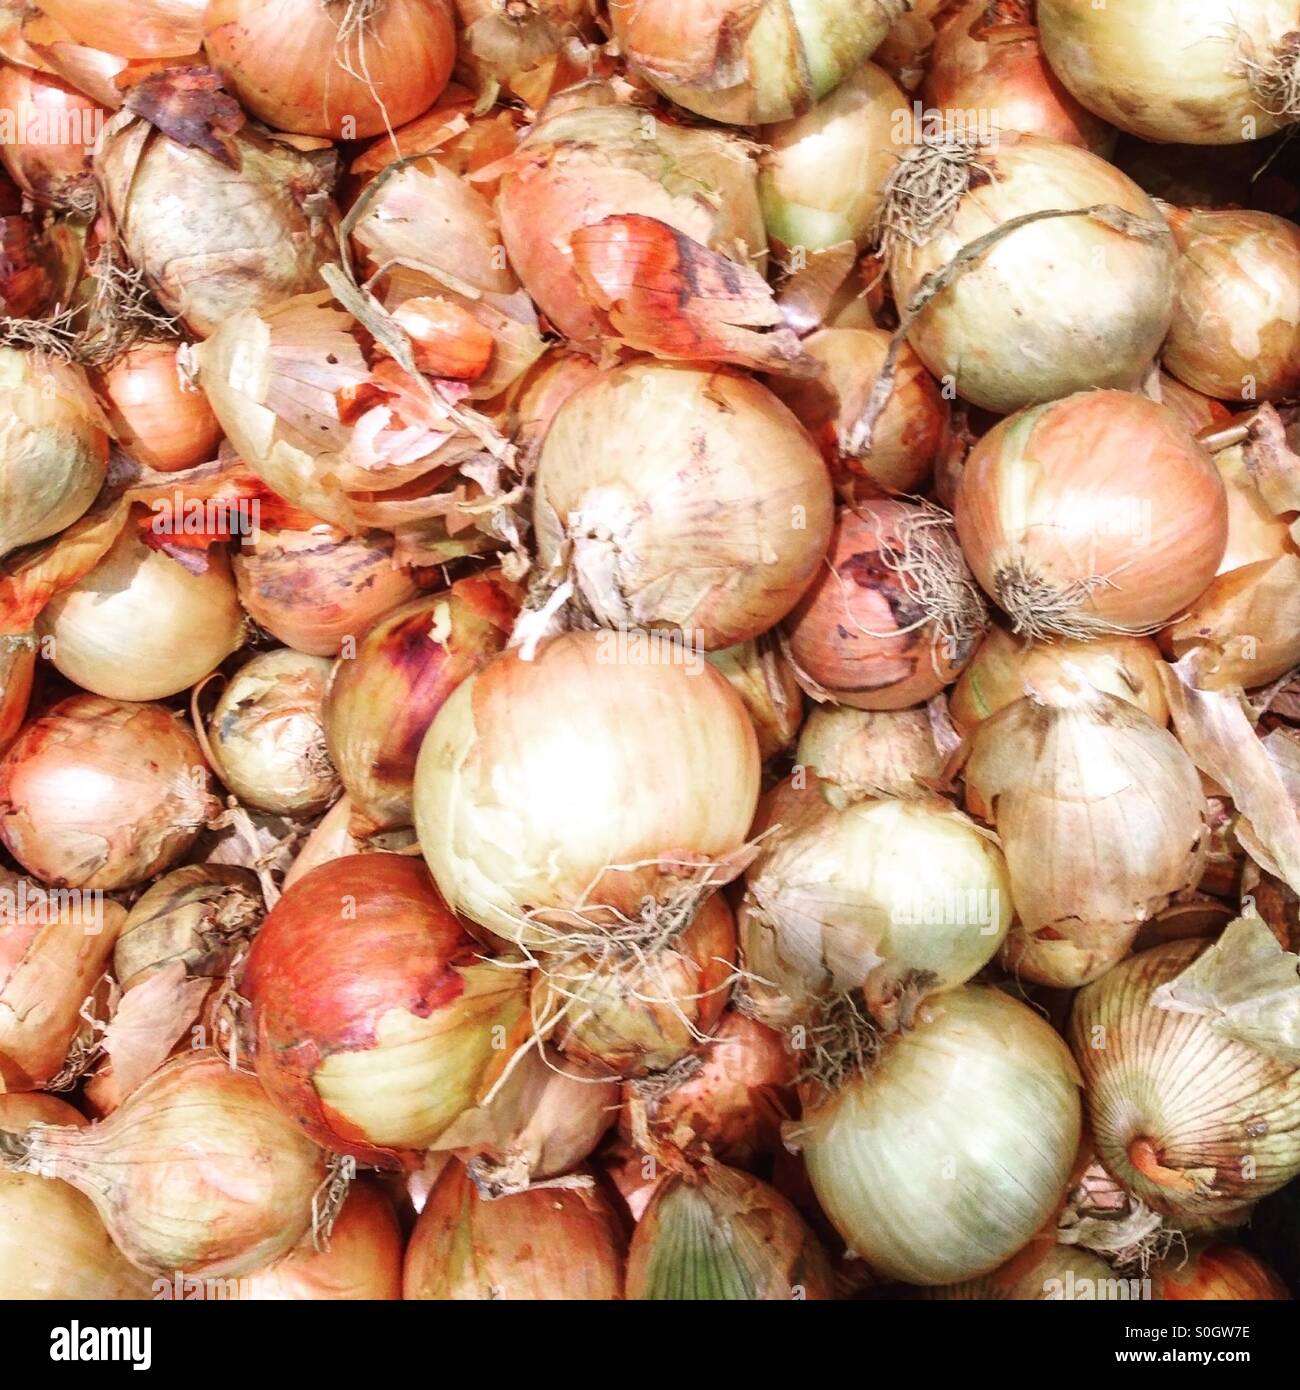 Onions on market Stock Photo